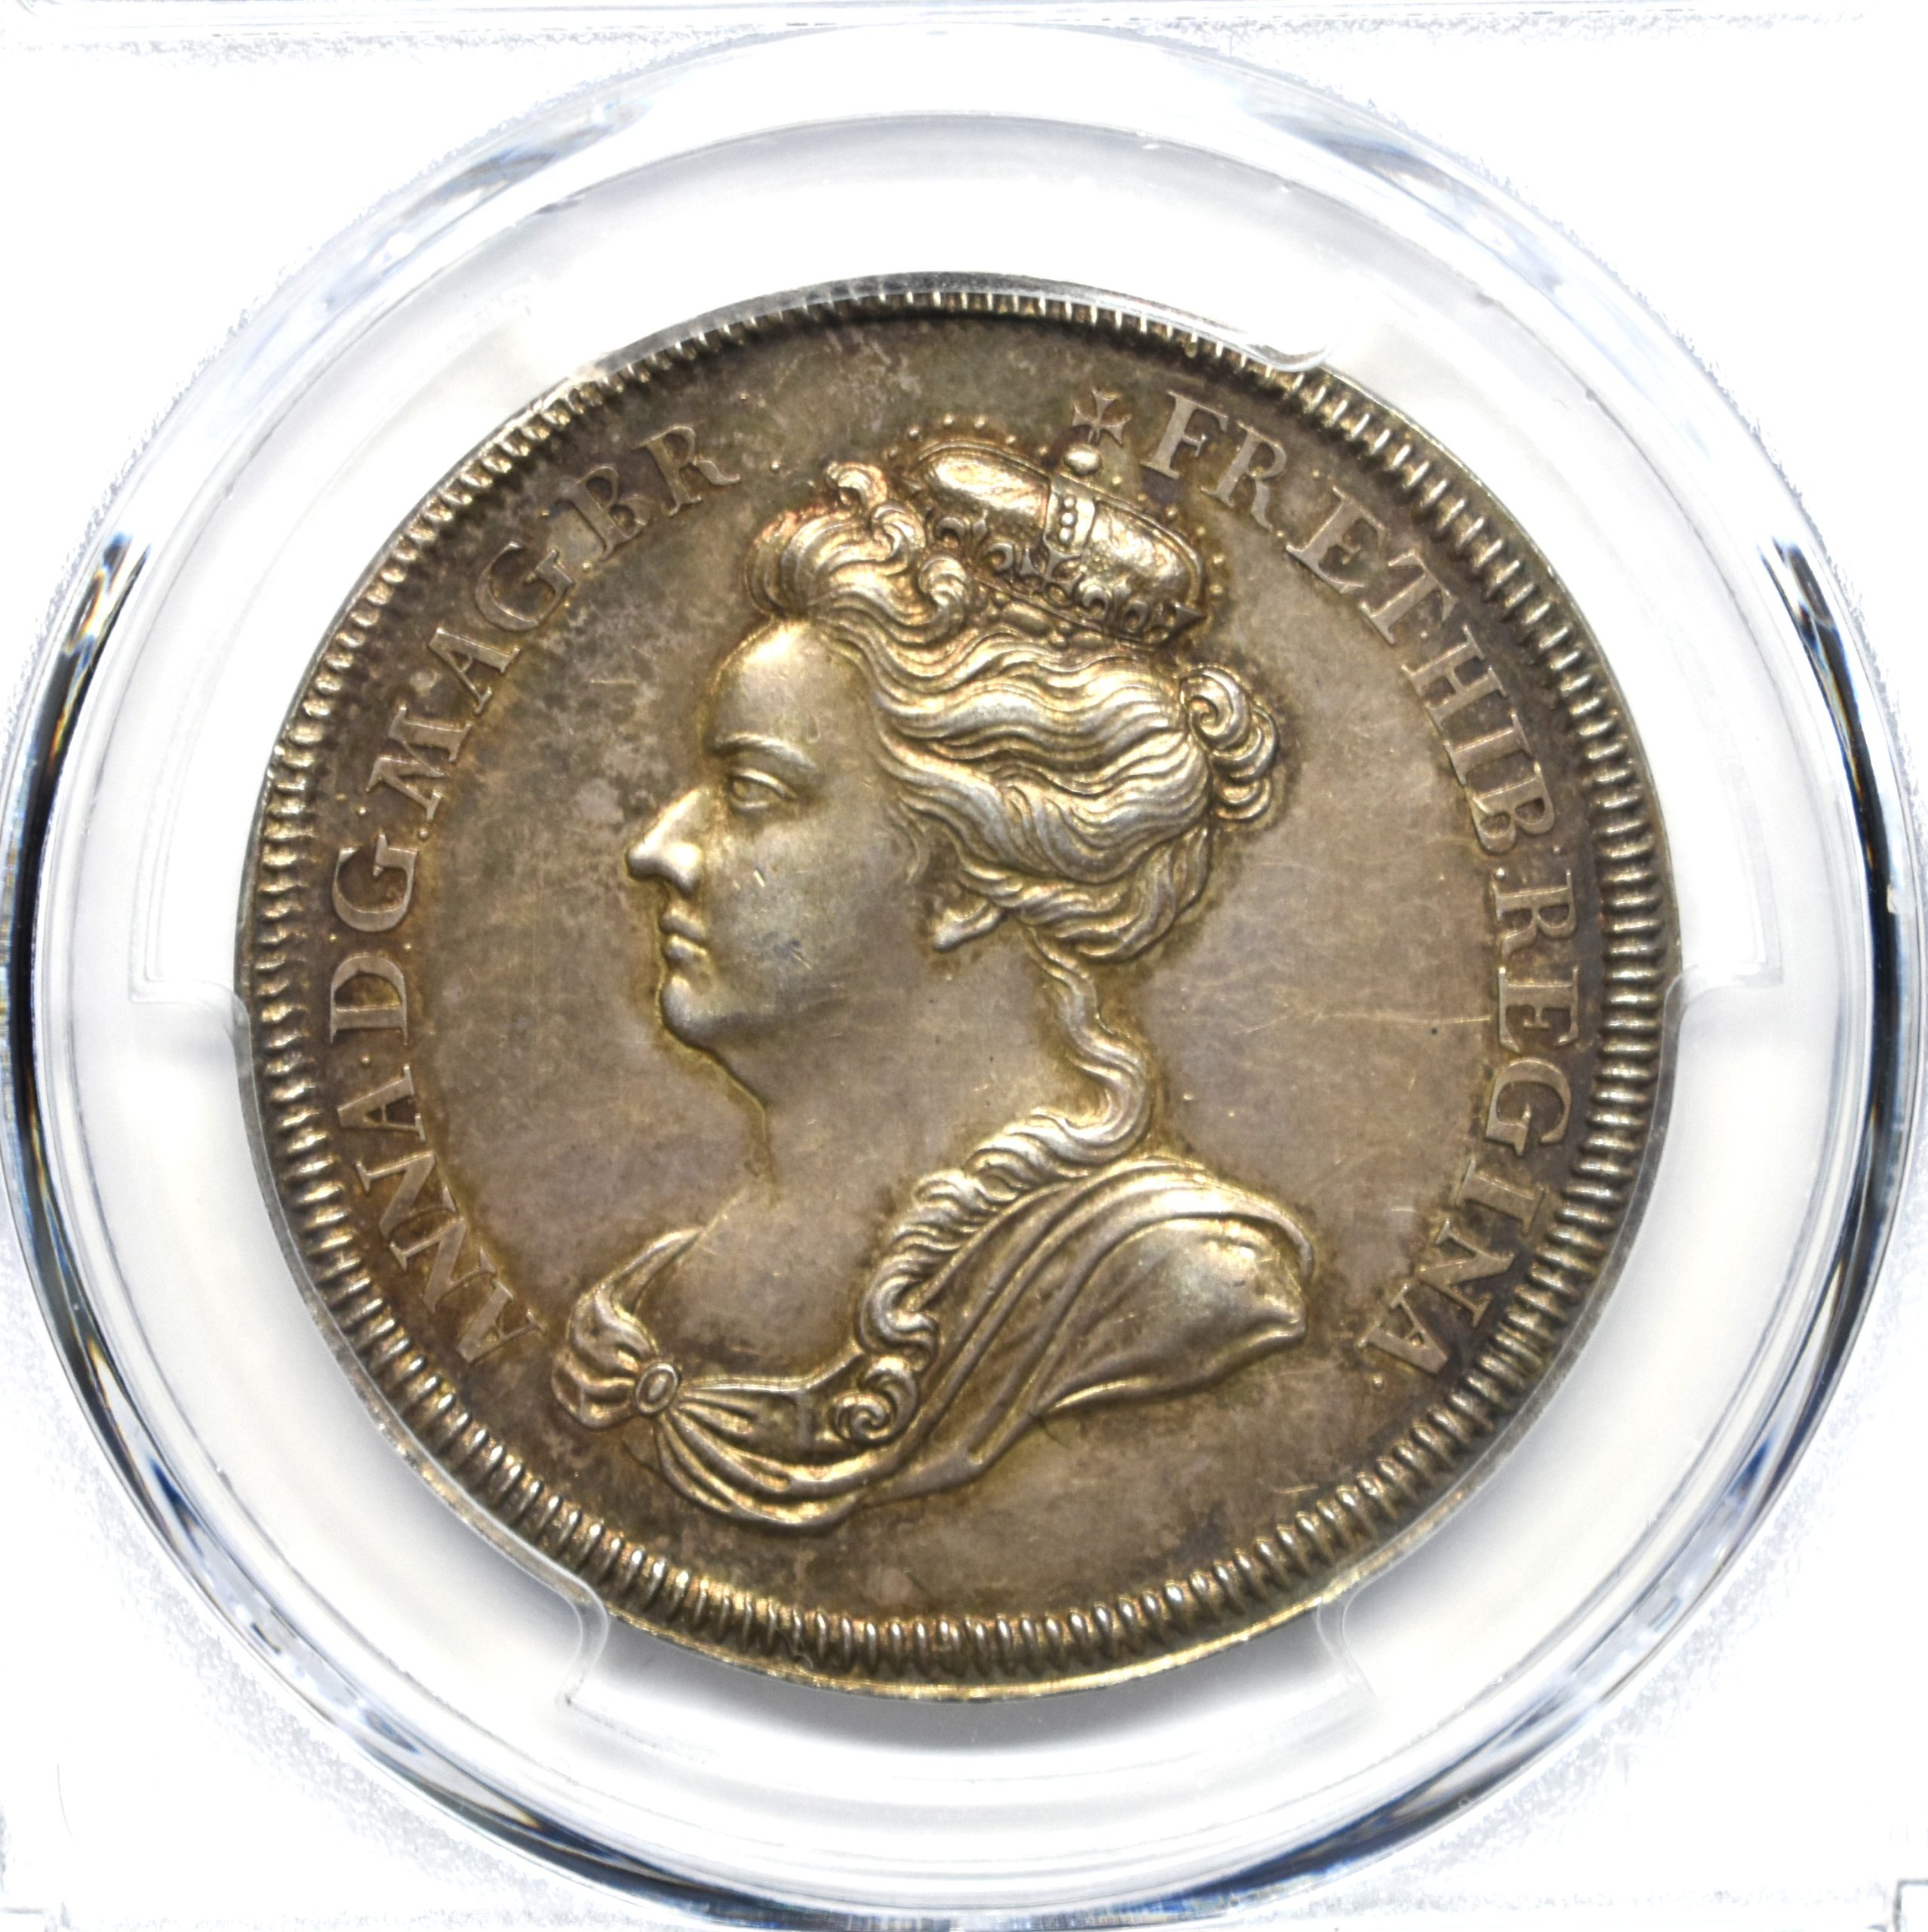 Sold】【最高鑑定】1702年 アン女王 イングランド王 即位銀メダル MS63